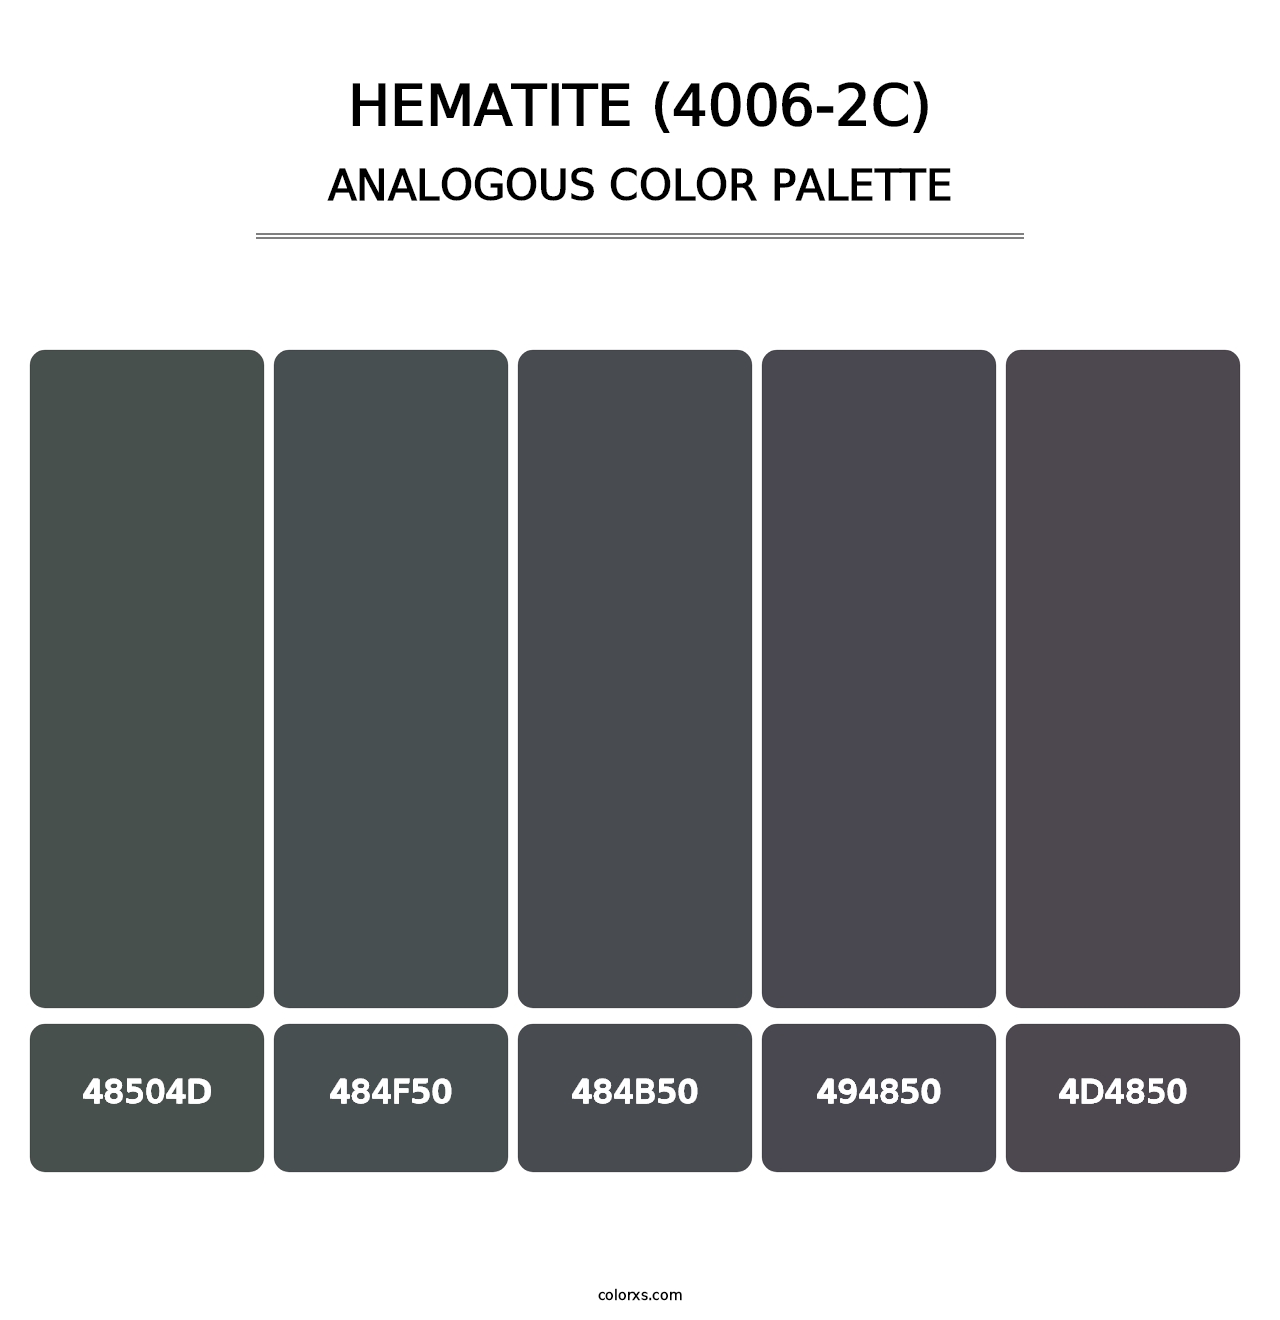 Hematite (4006-2C) - Analogous Color Palette